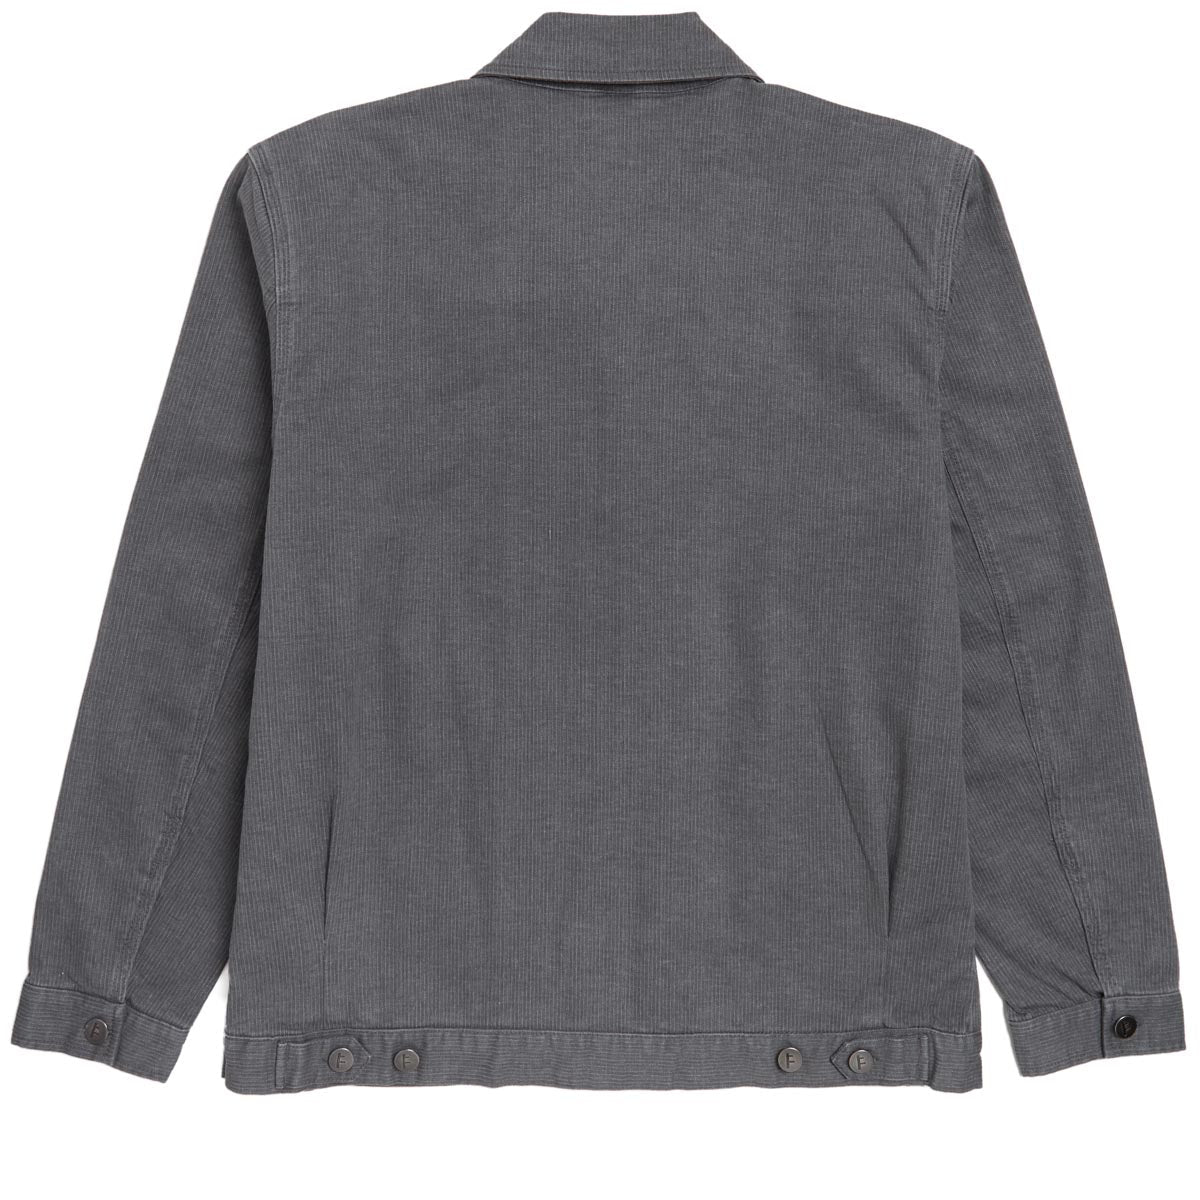 Former Distend Crest Jacket - Worn Grey image 2